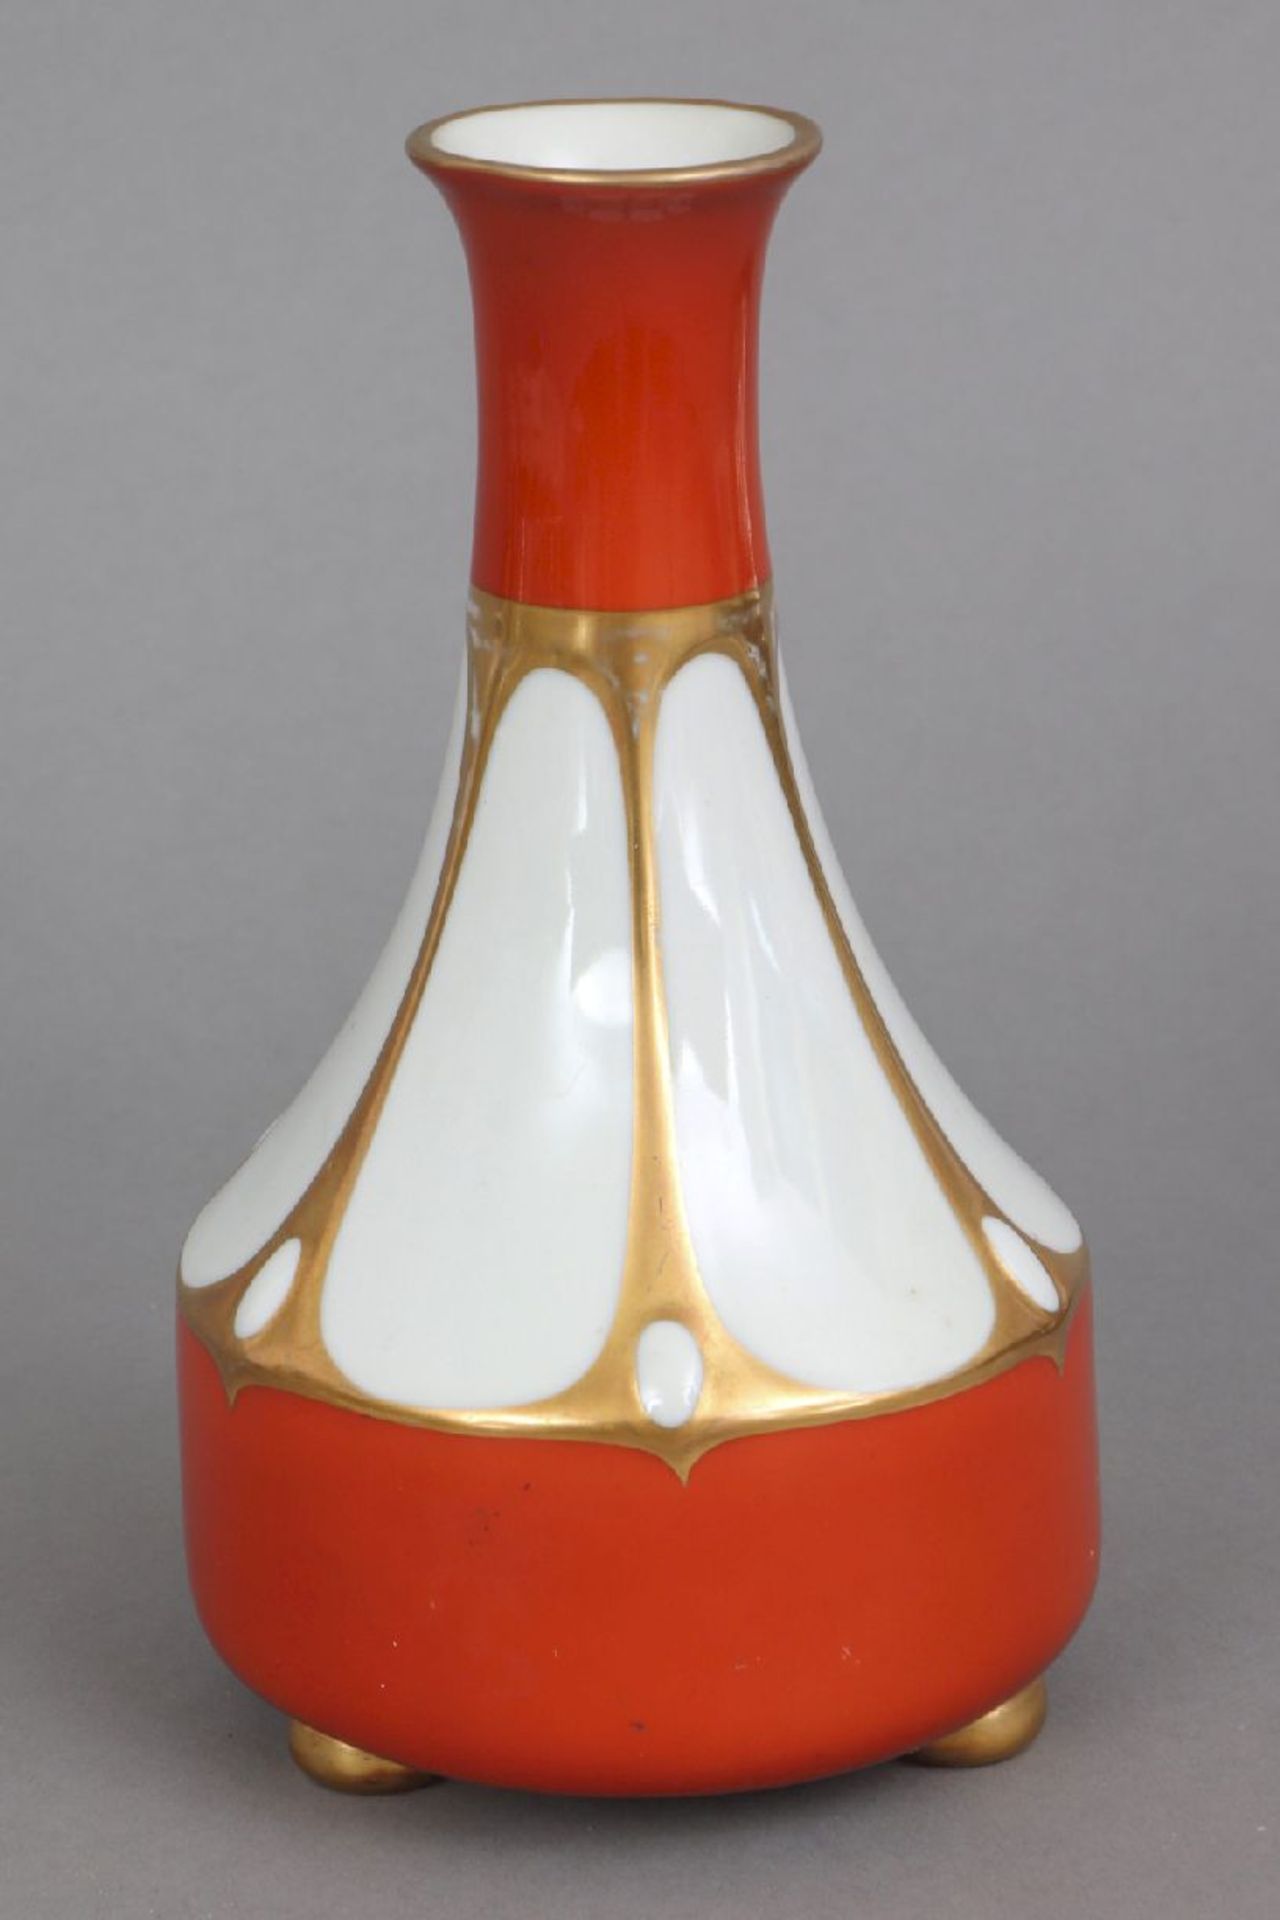 METZLER & ORTLOFF Porzellan-Vase1920-1930er Jahre, orange-roter Fond, Golddekor, keulenförmiger